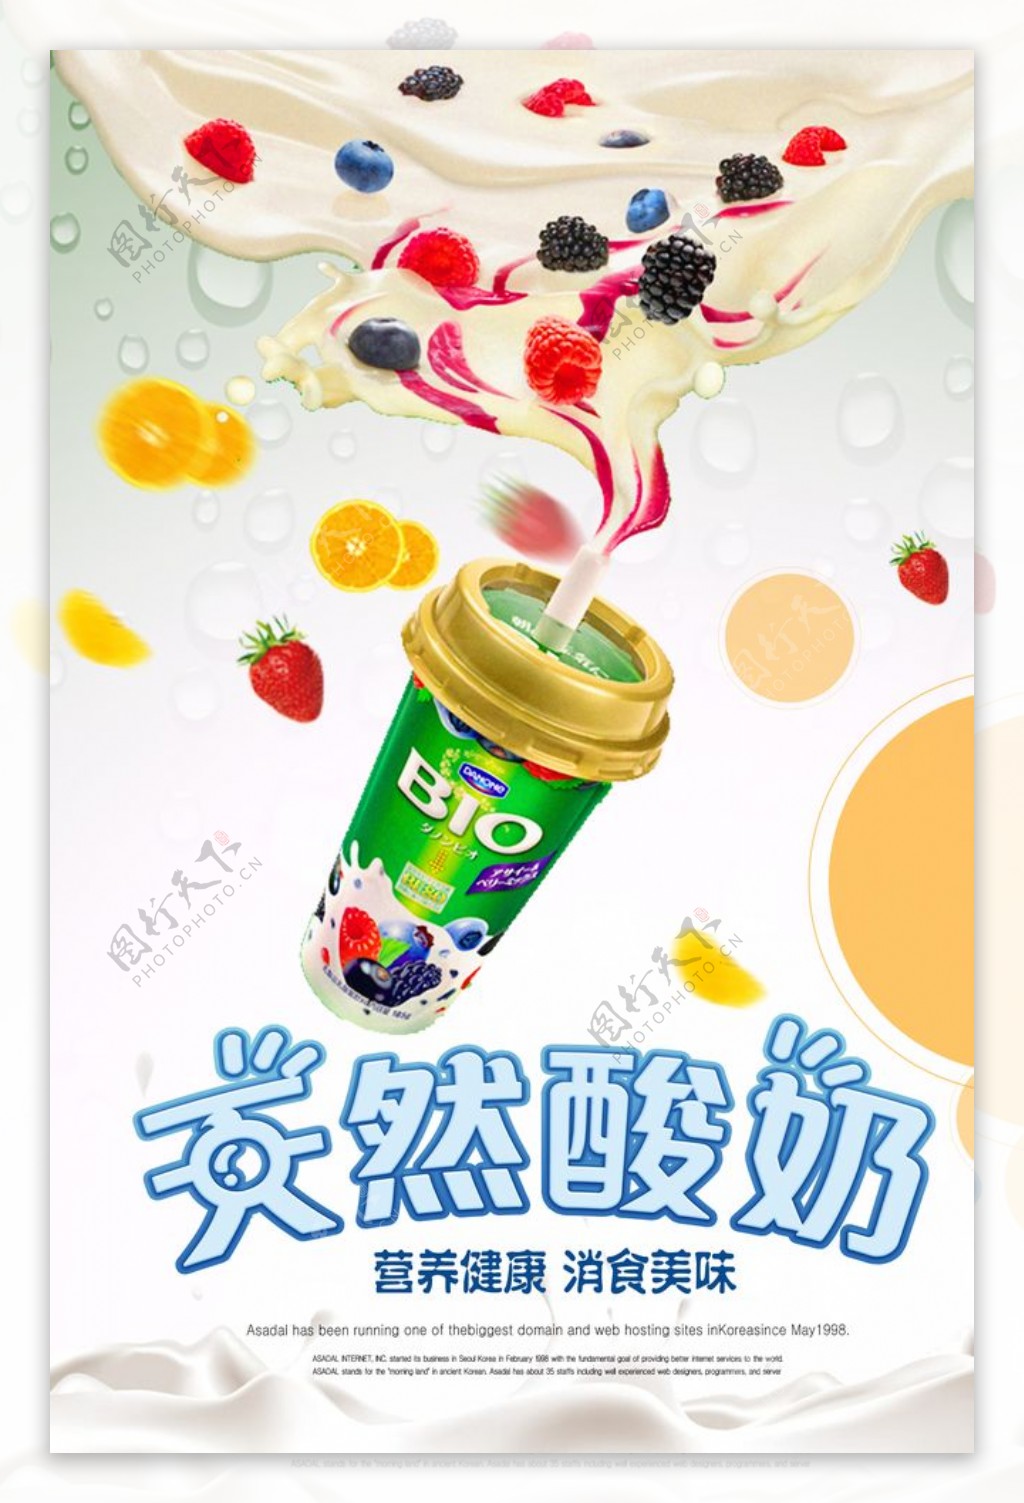 清新酸奶海报